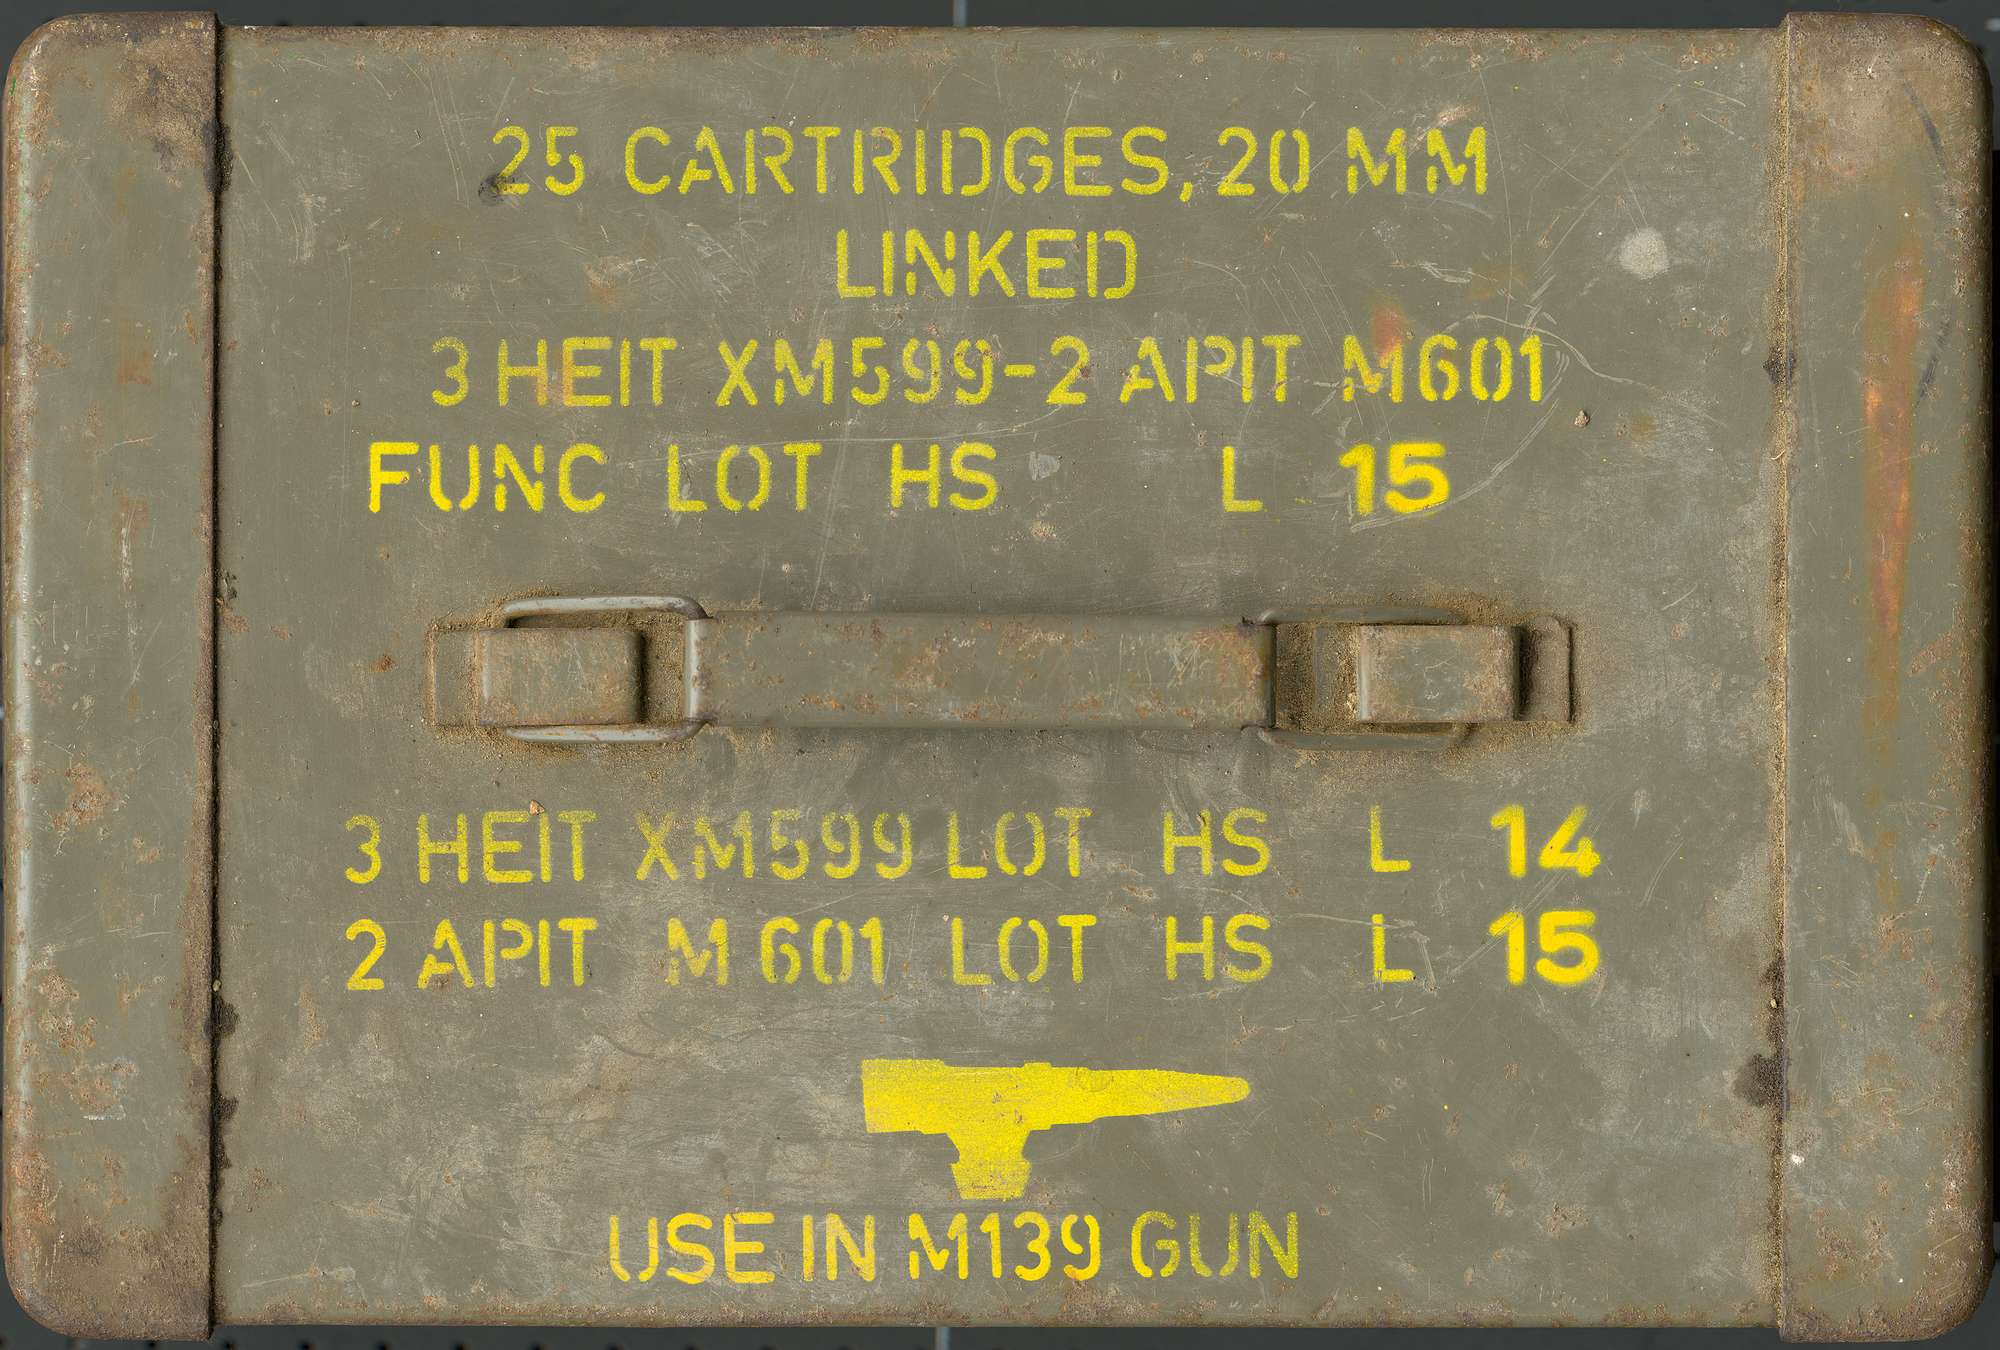             Photo wallpaper detail cartridge box
        